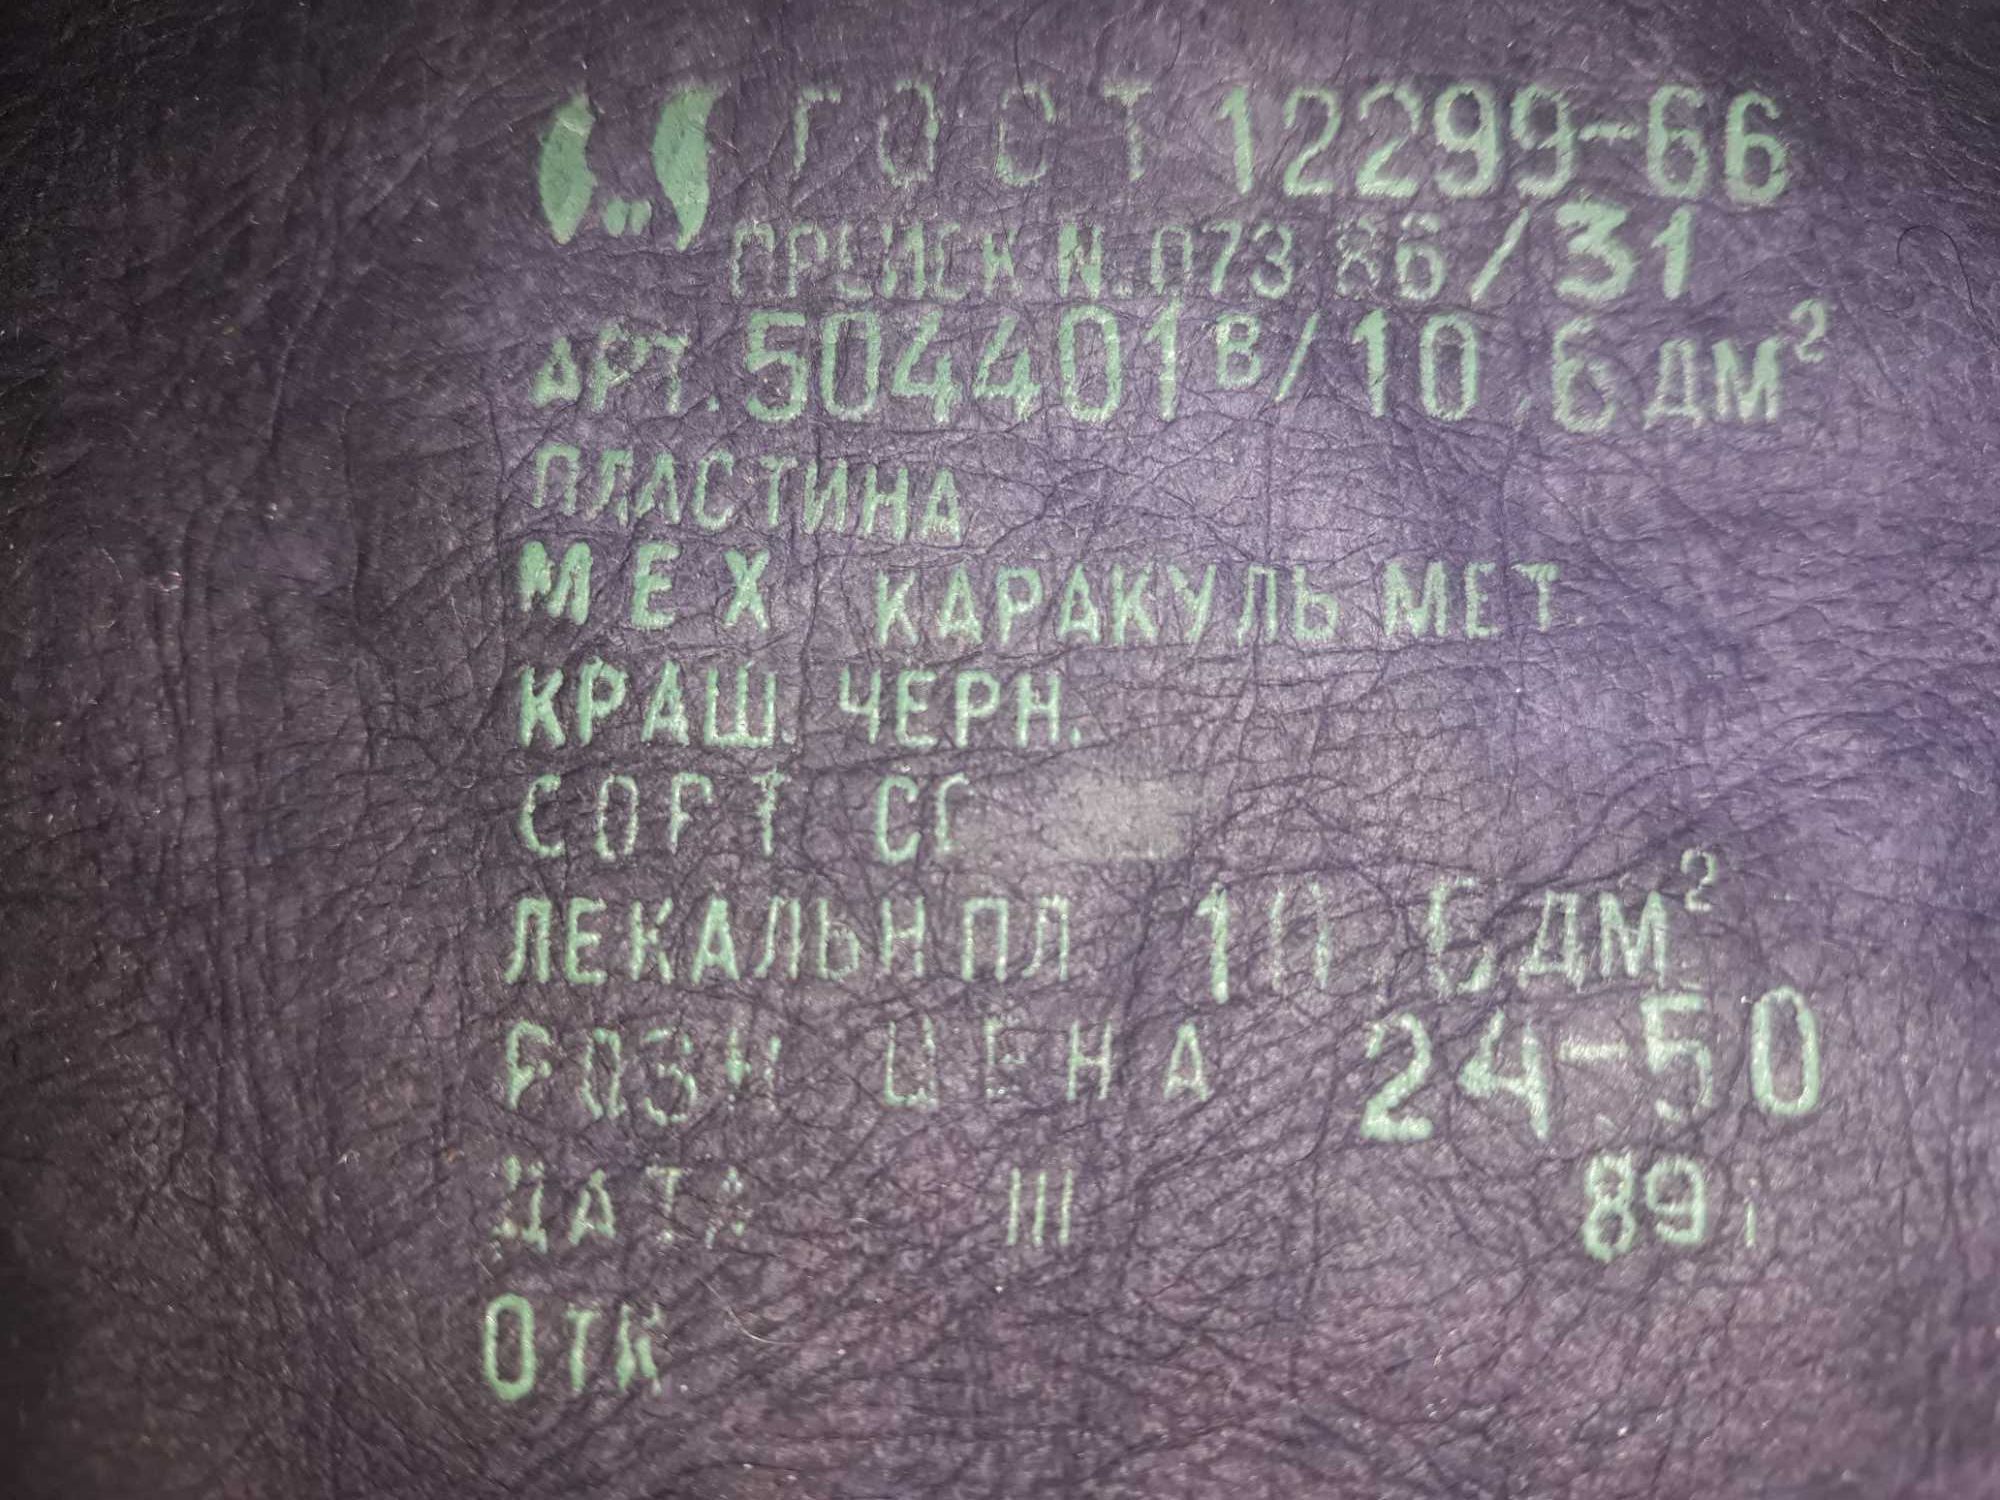 Каракуль мех пластина с биркой 1989г. СССР Союзмехпром